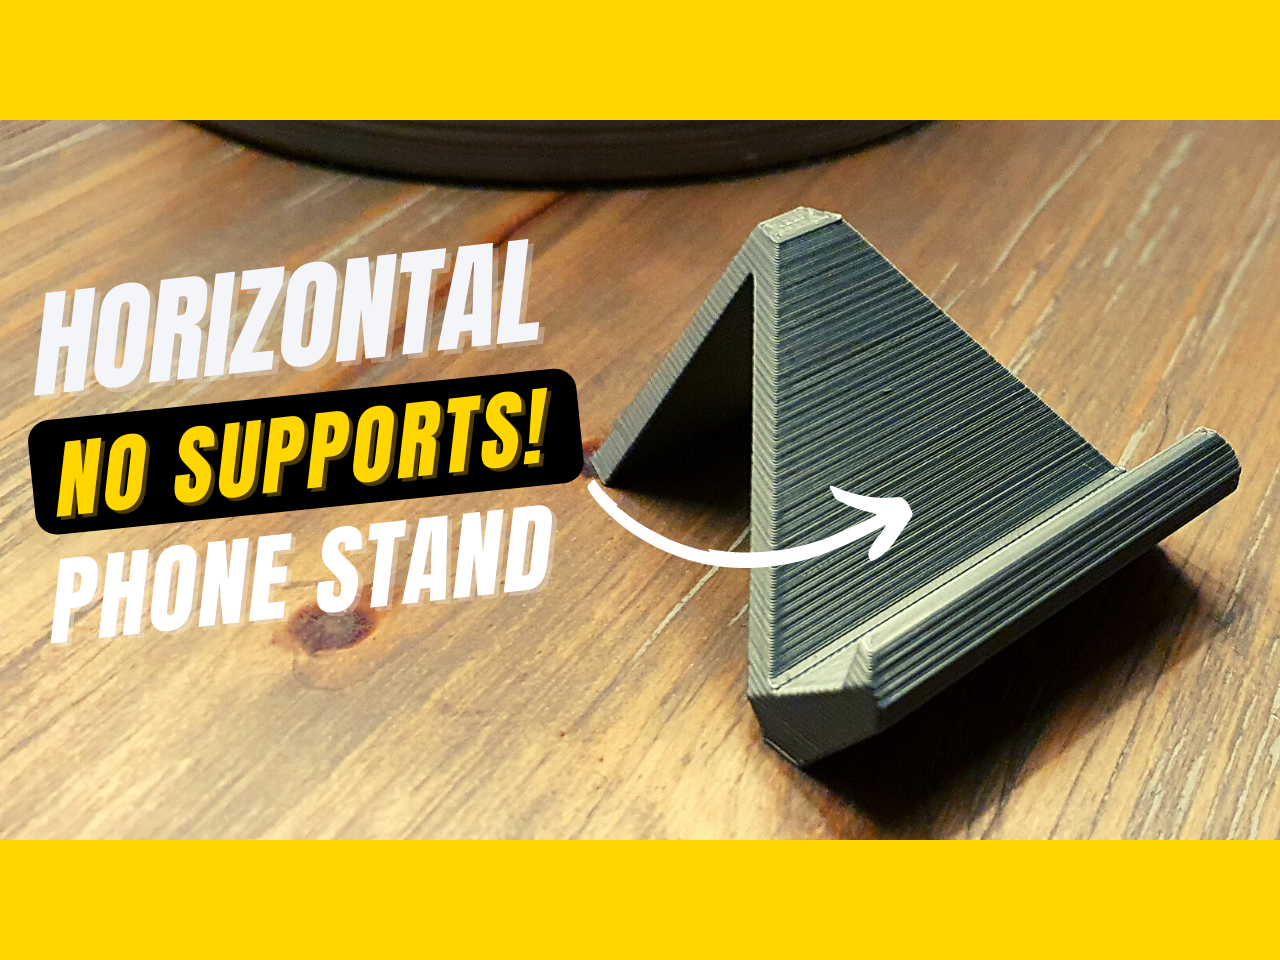 Horizontal Phone Stand